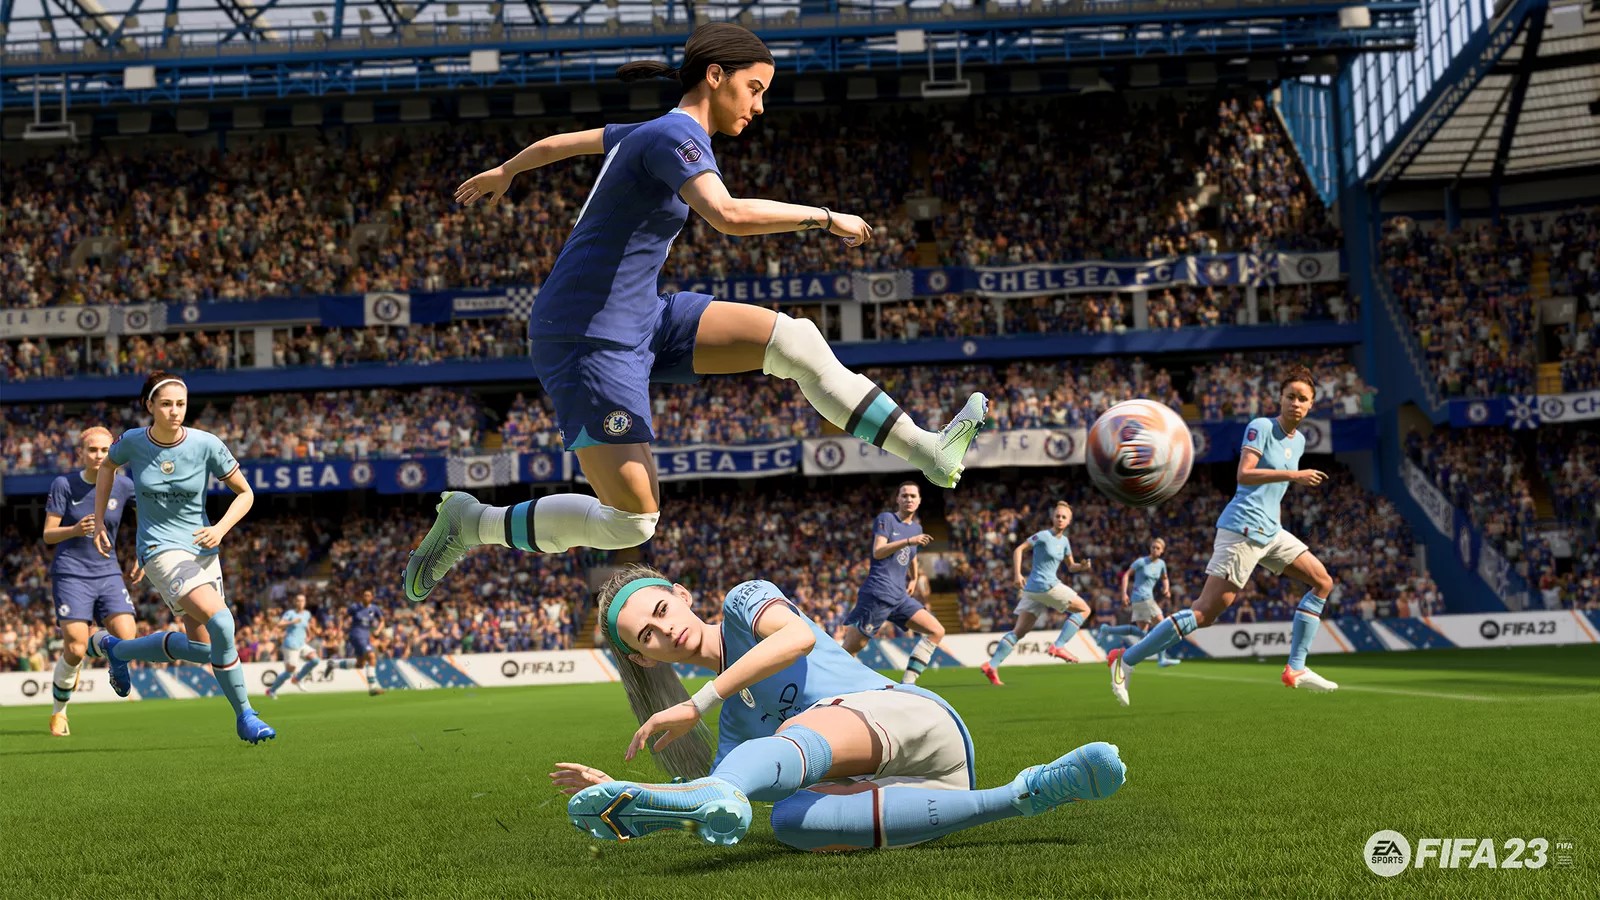 FIFA 23 permite desligar comentários críticos